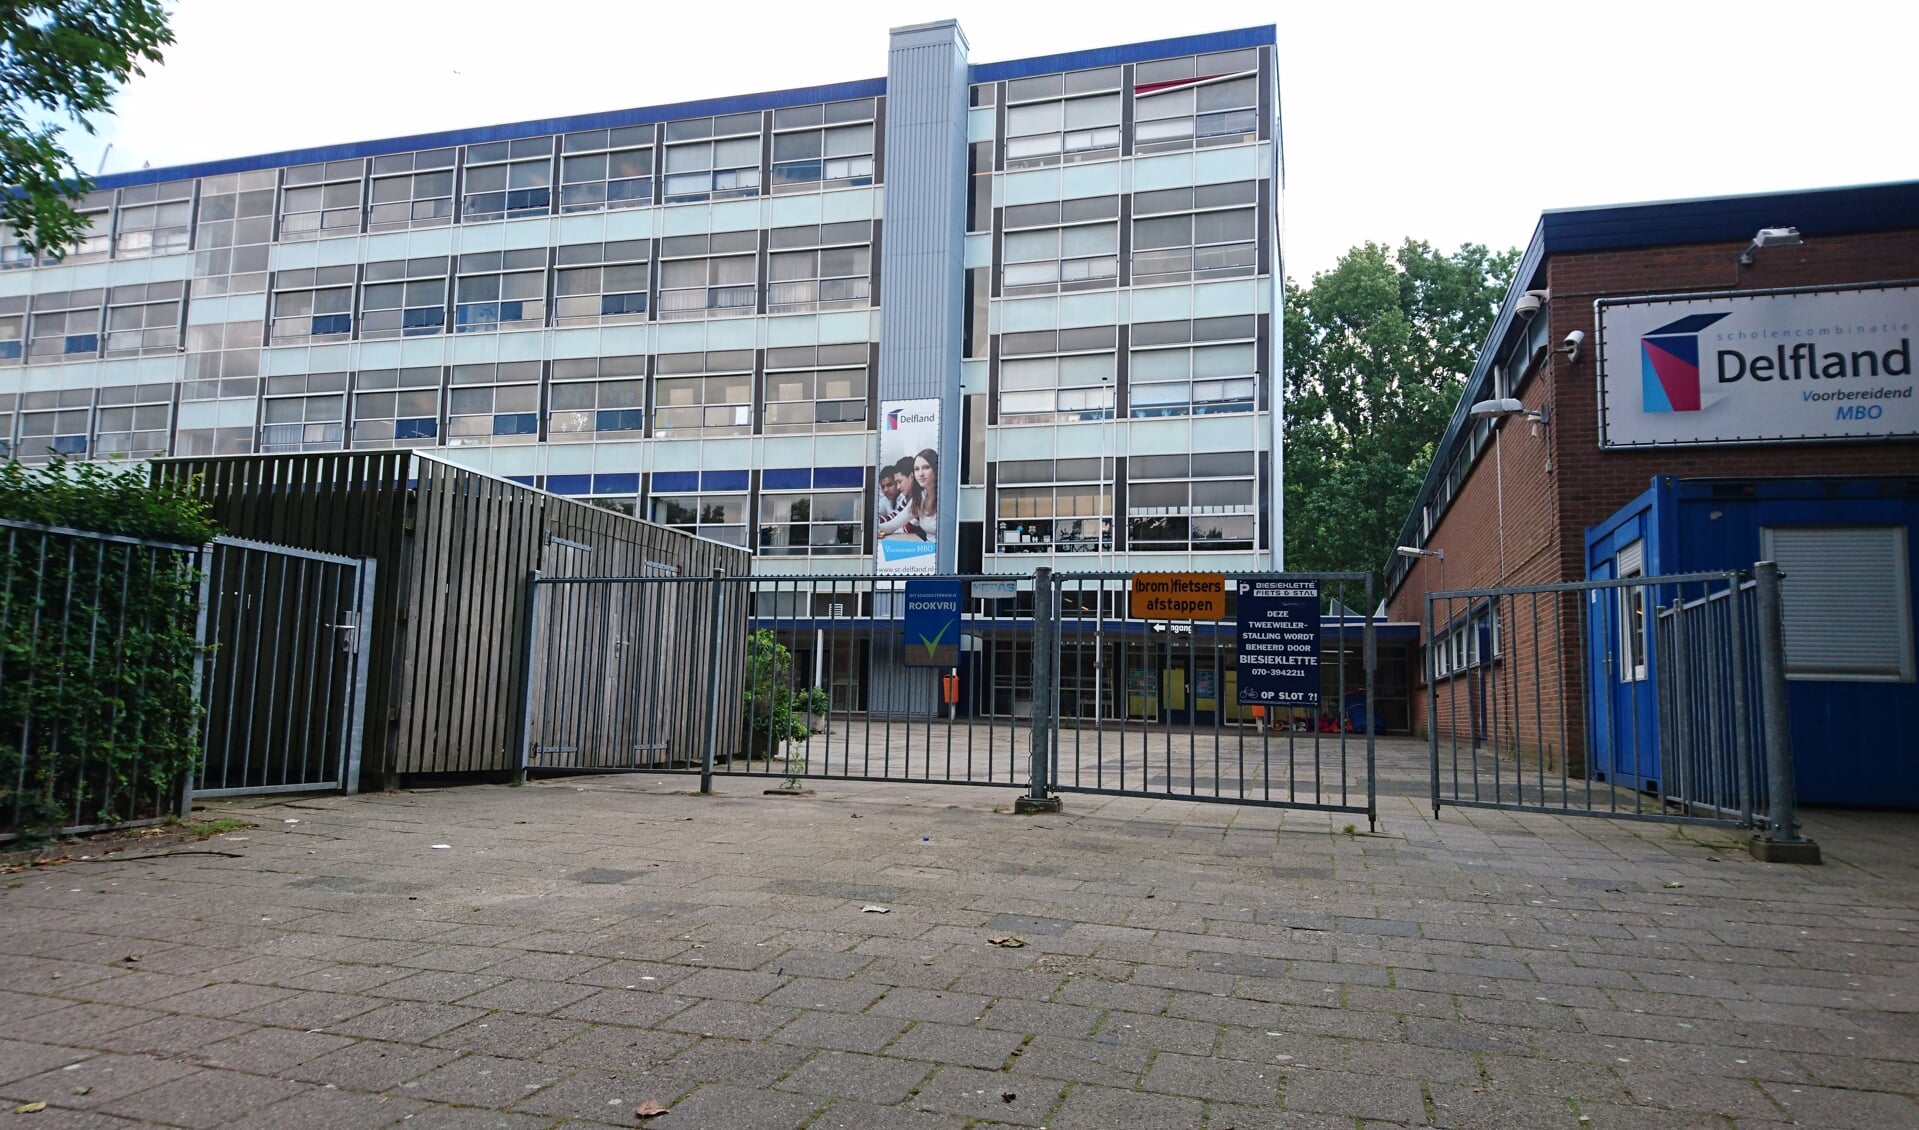 Talloze Delftenaren hebben vele herinneringen liggen in dit schoolgebouw. 